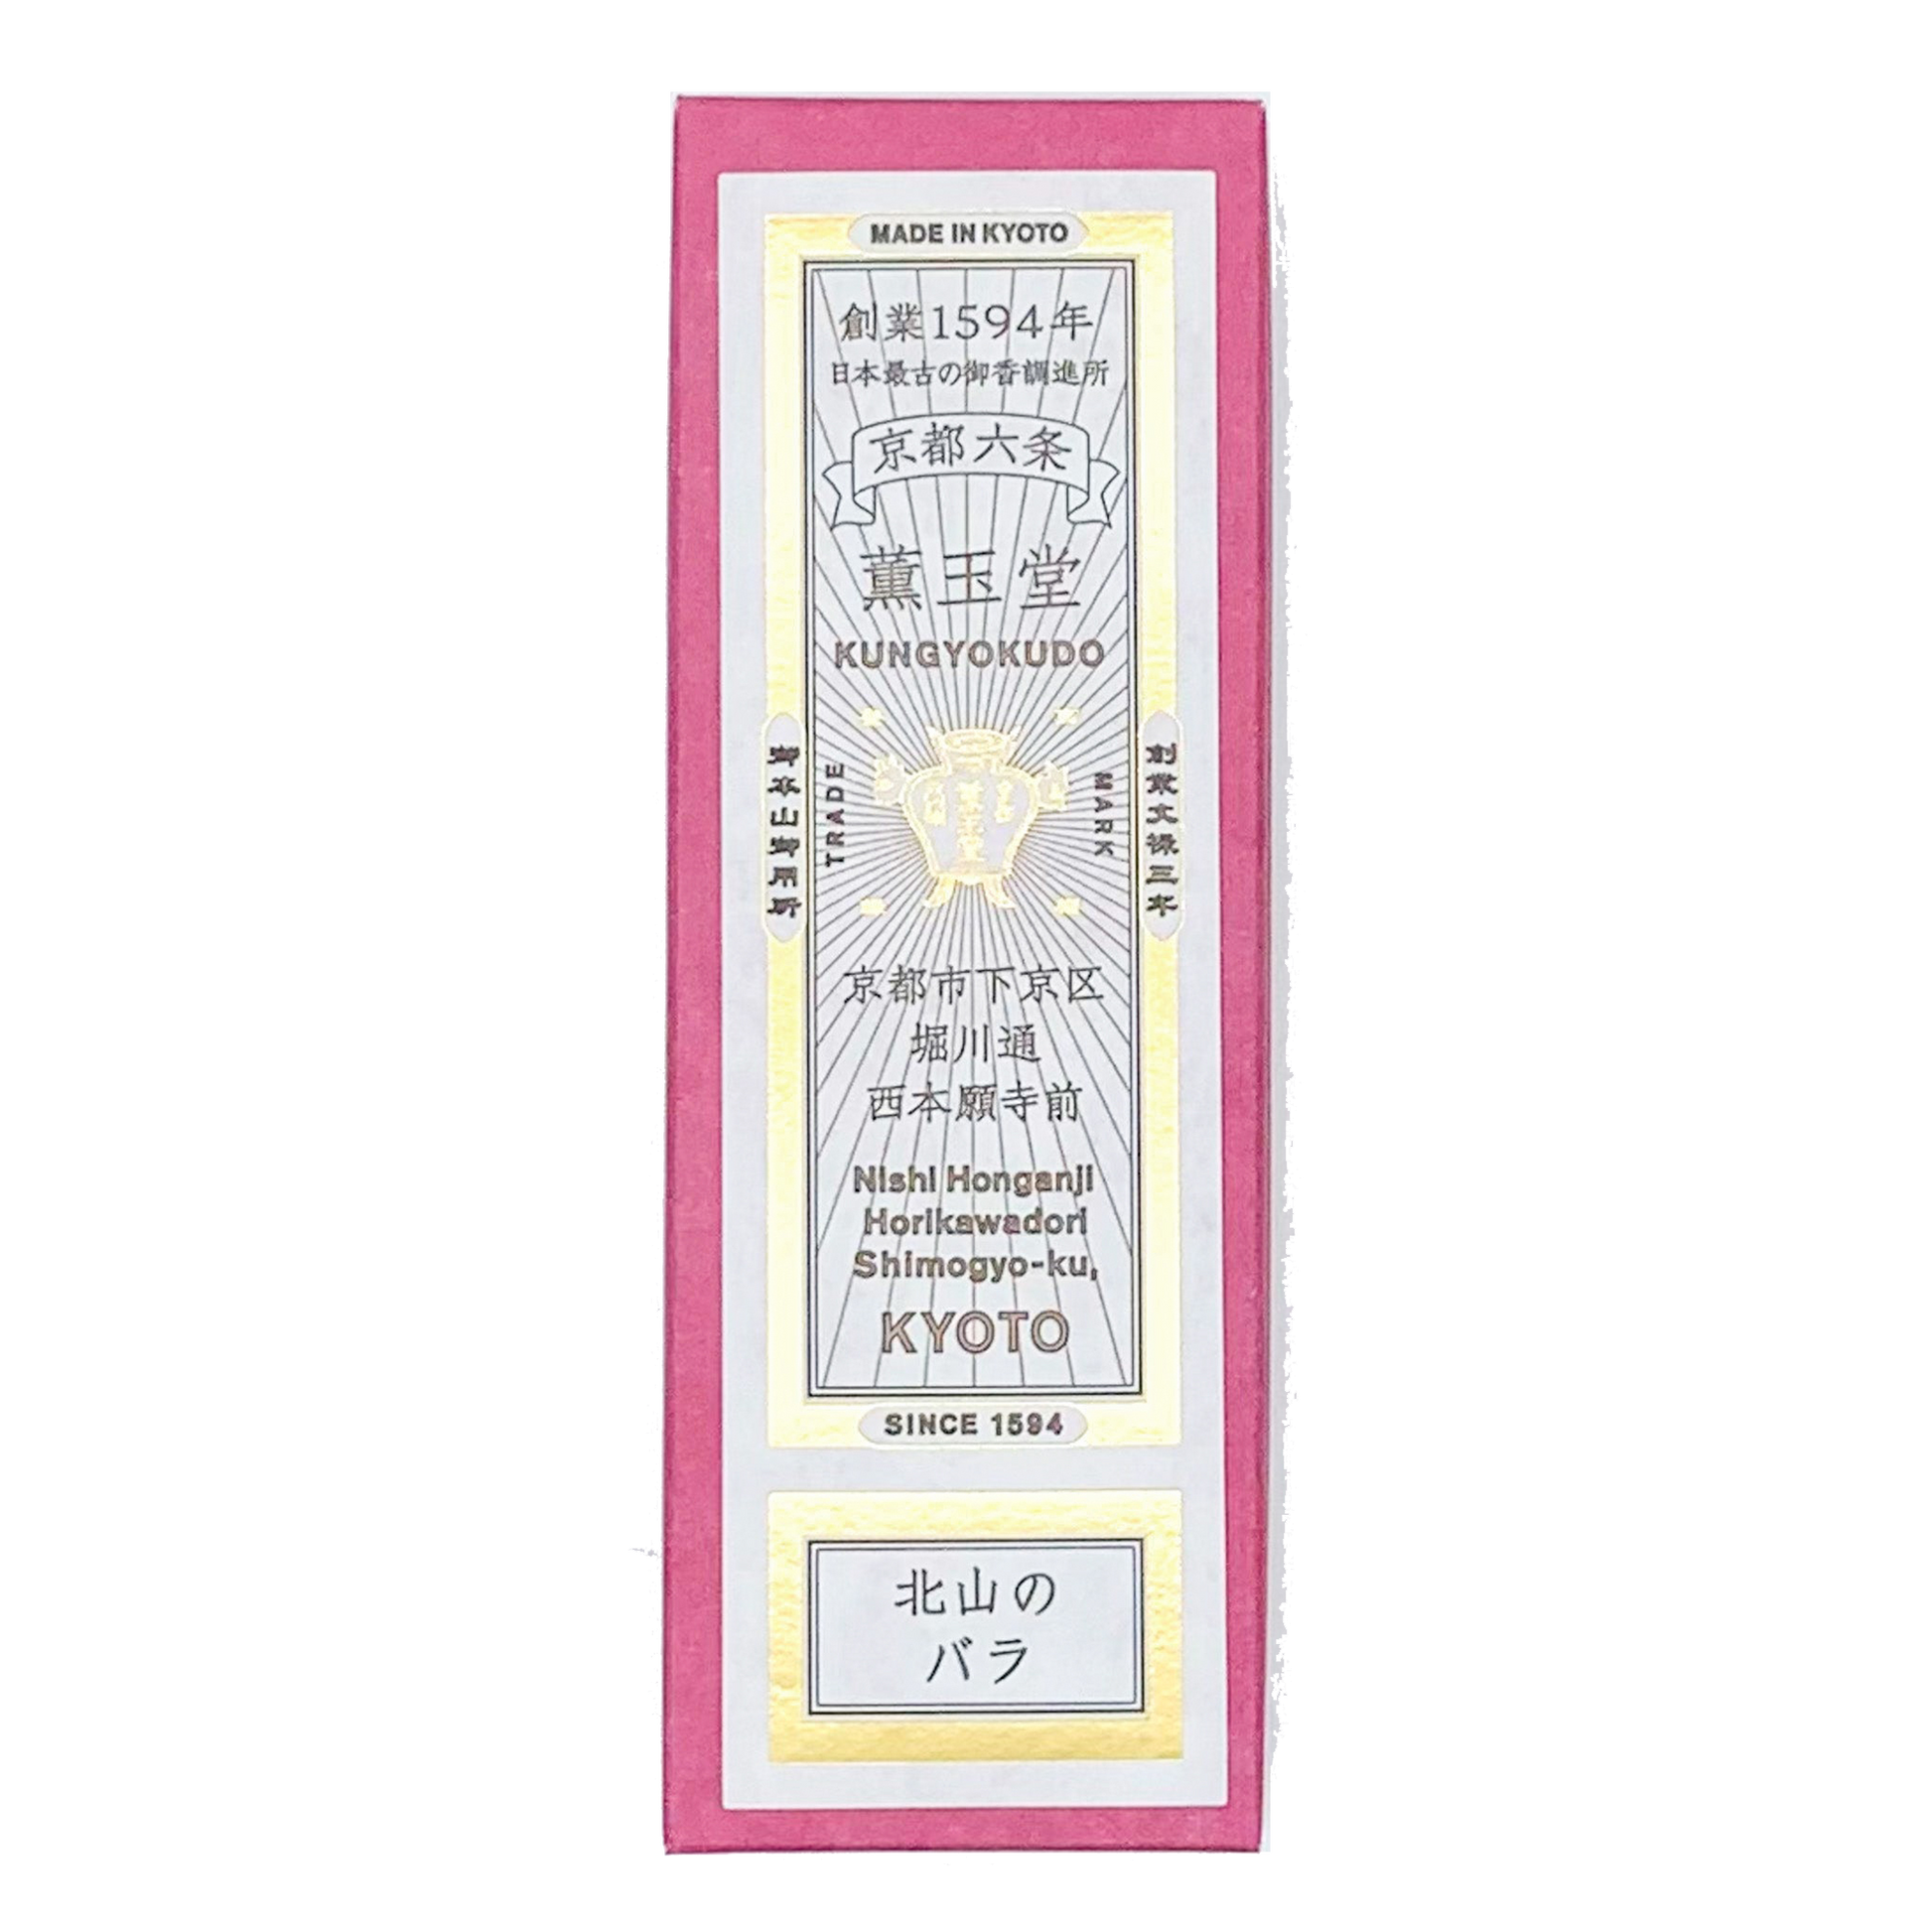 Kungyokudo Incense Sticks in Paper Box - Rose